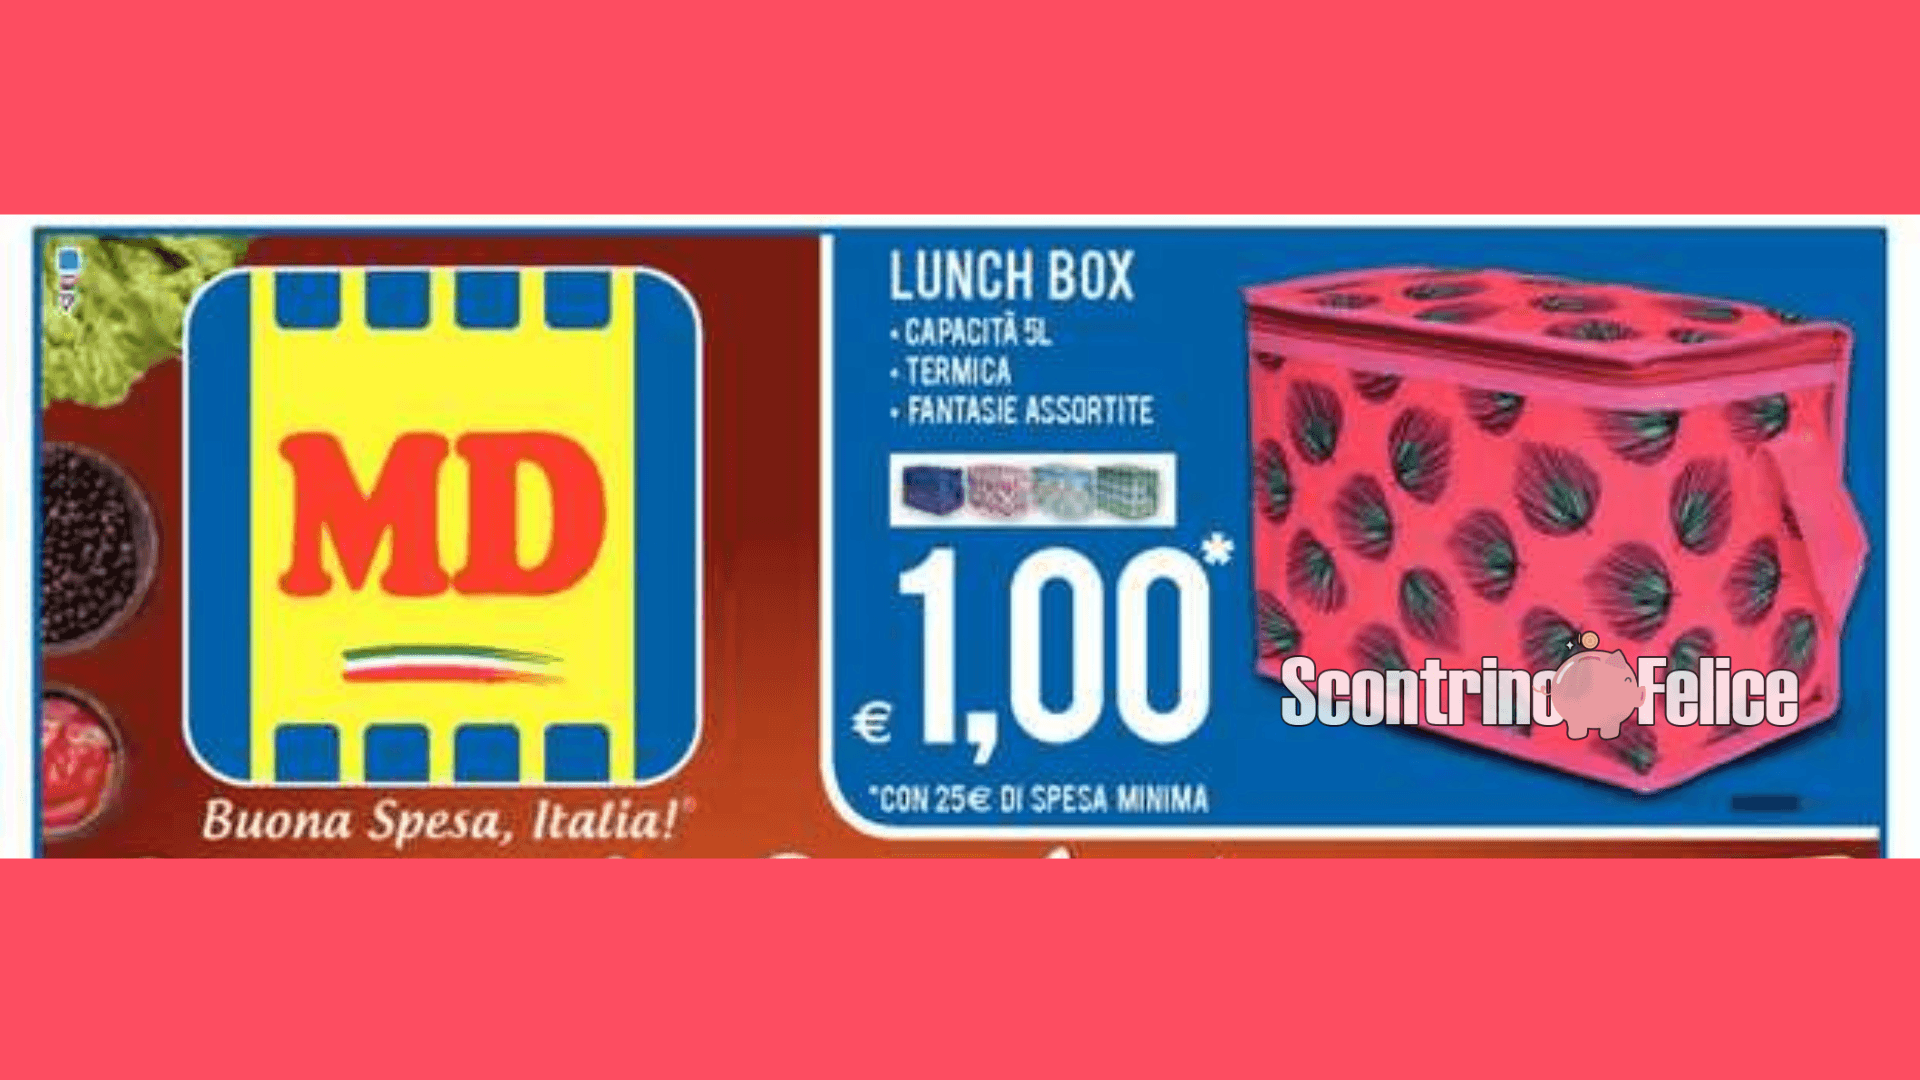 Lunch box a solo 1 euro da MD: scopri come averla! 24